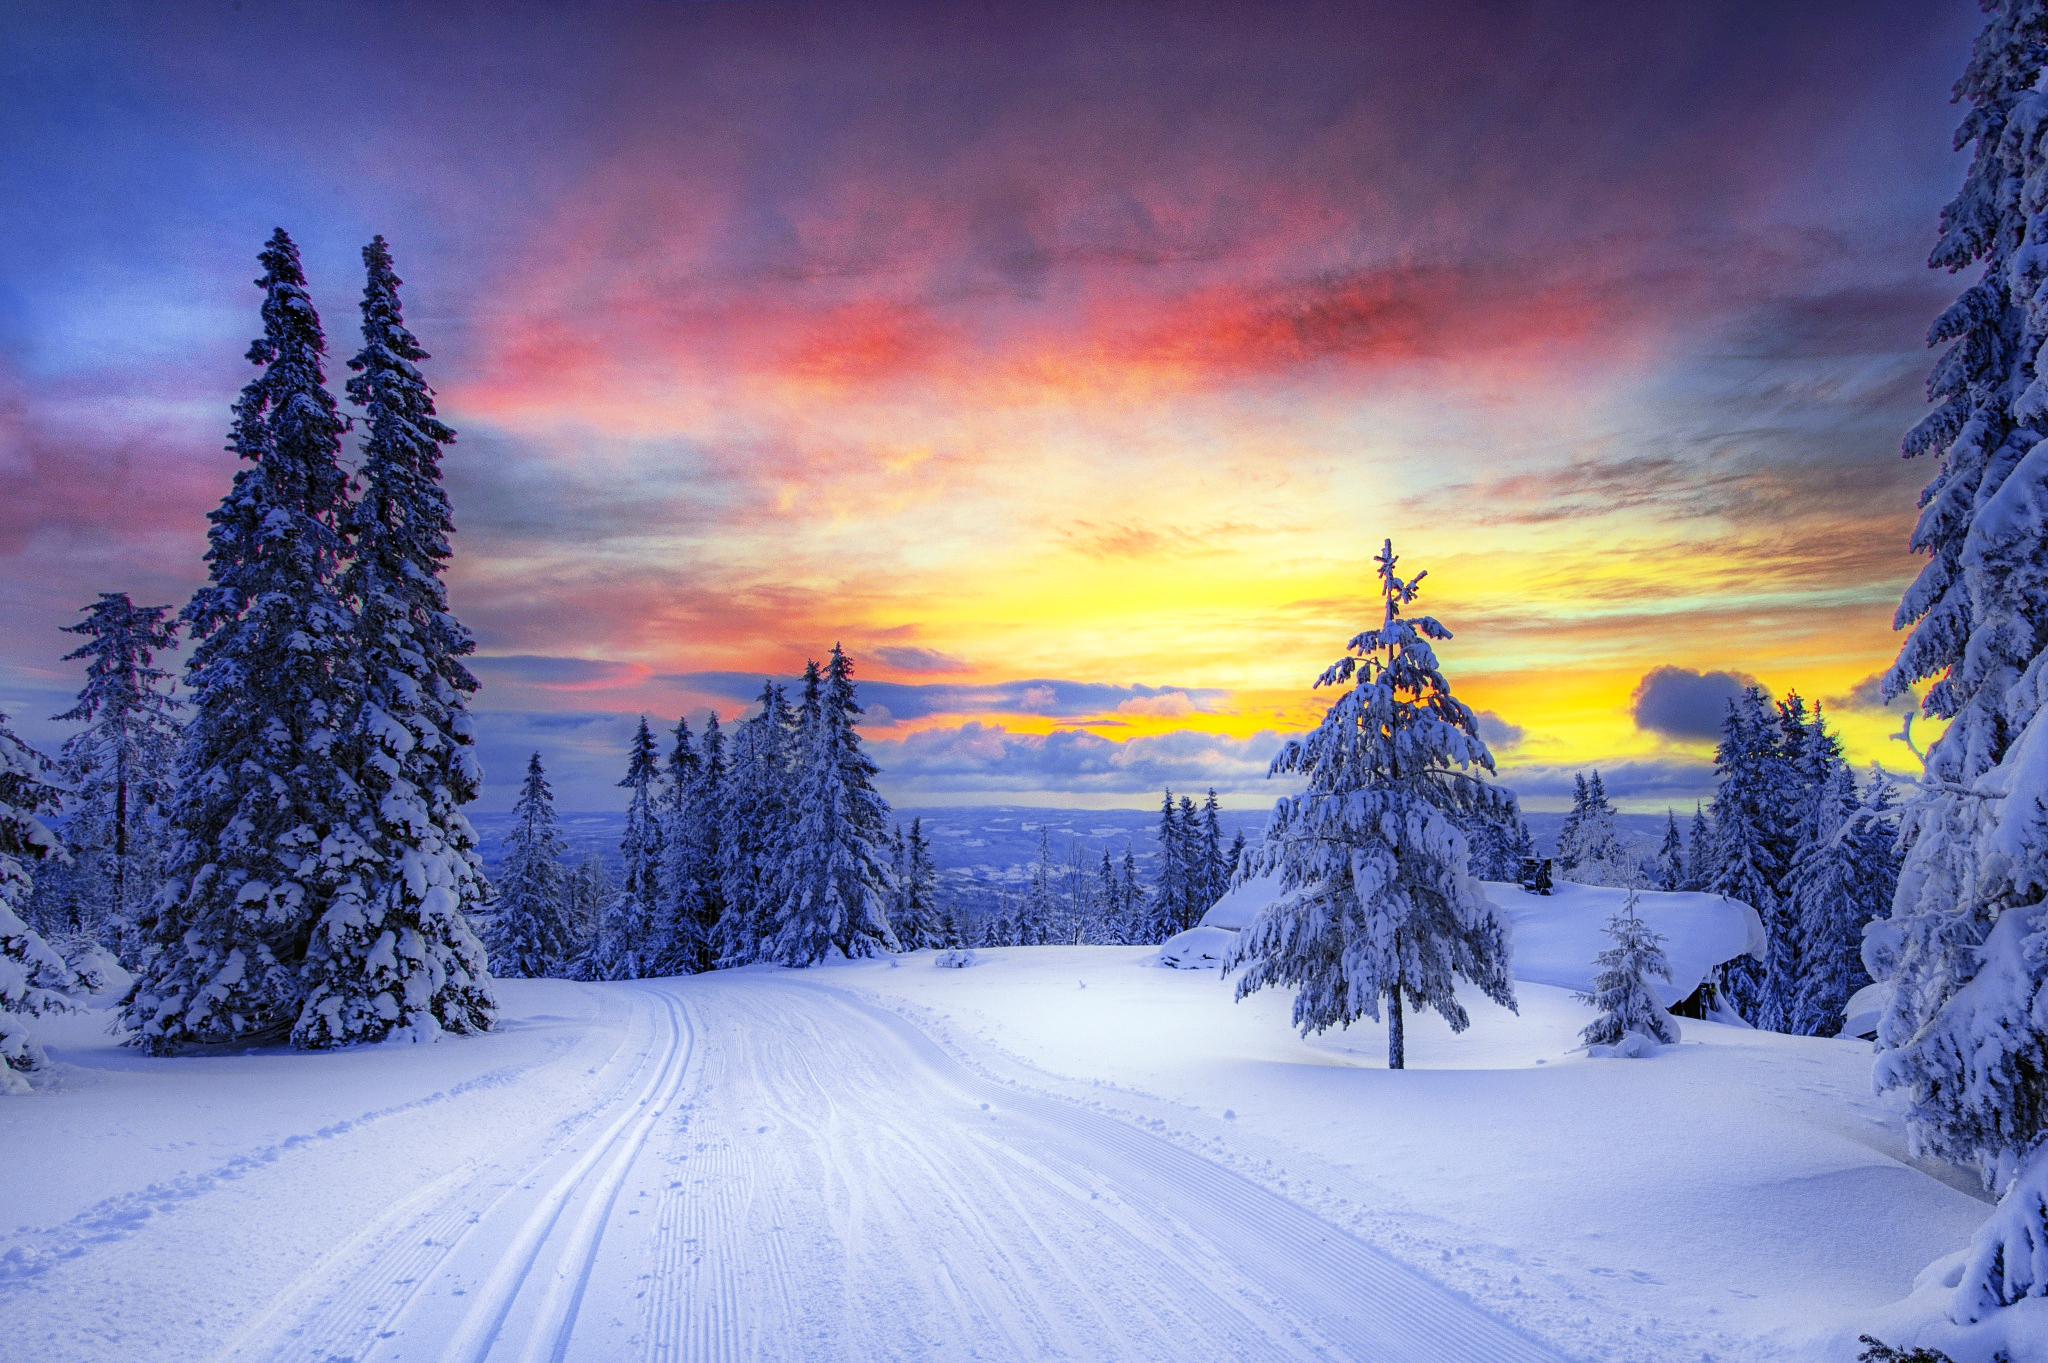 100 Hình ảnh mùa đông tuyết phủ trắng xóa cực đẹp - Hà Nội Spirit Of Place